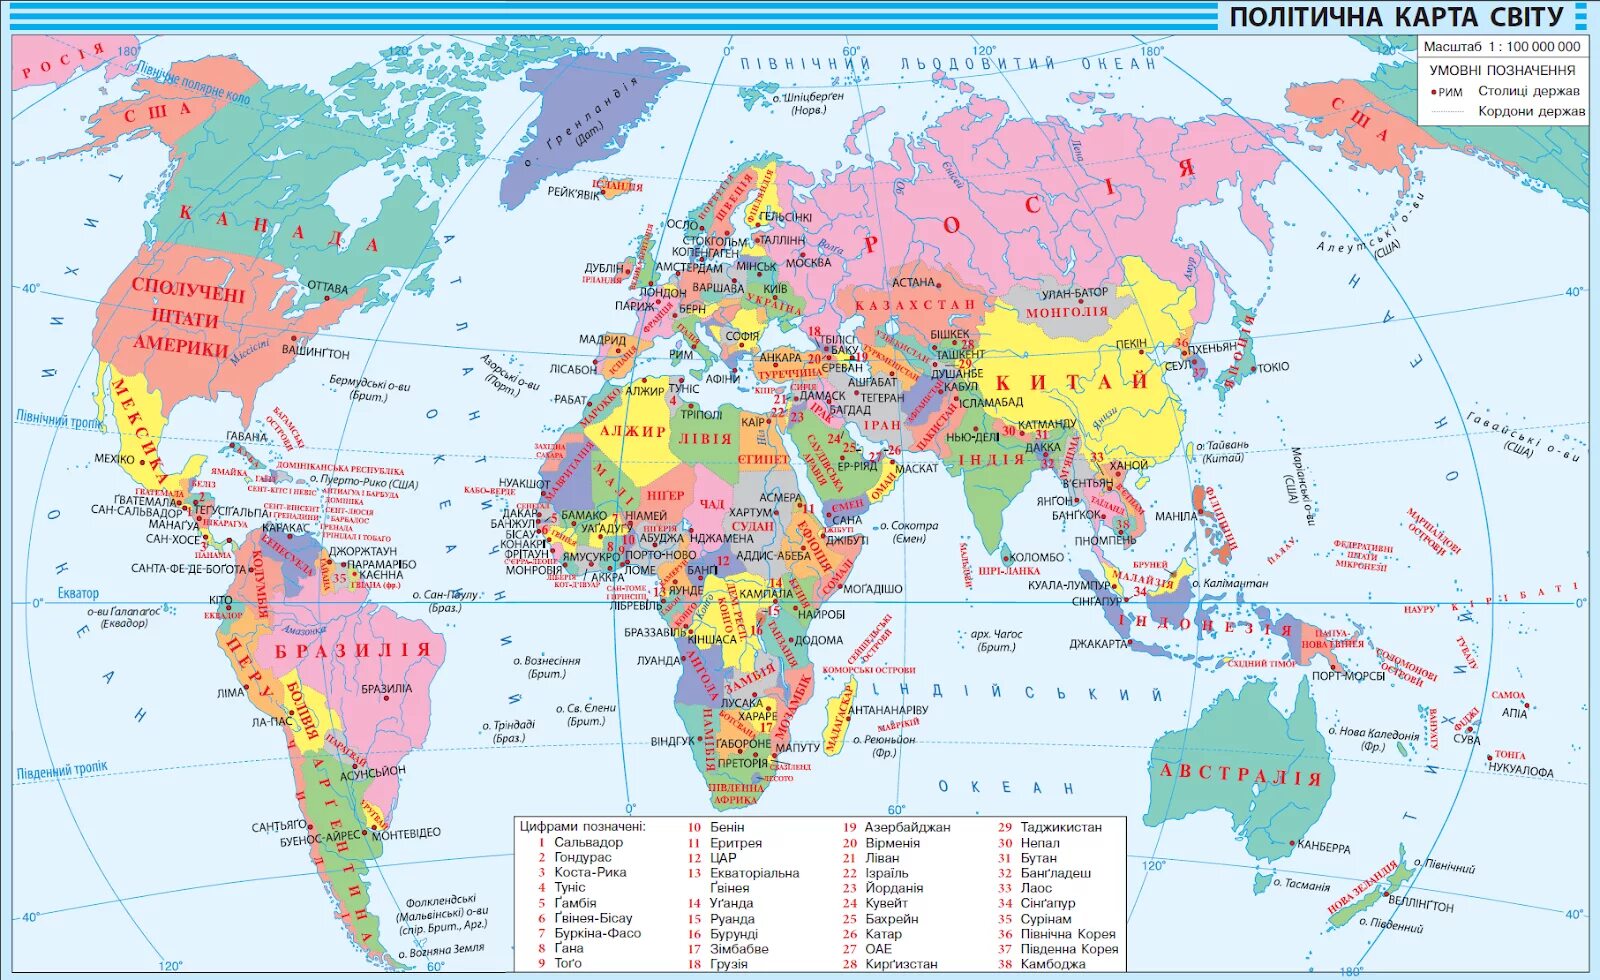 Карта світу. Політична карта. Політична карта світу на українській мові. Карта с обозначением стран. Karta